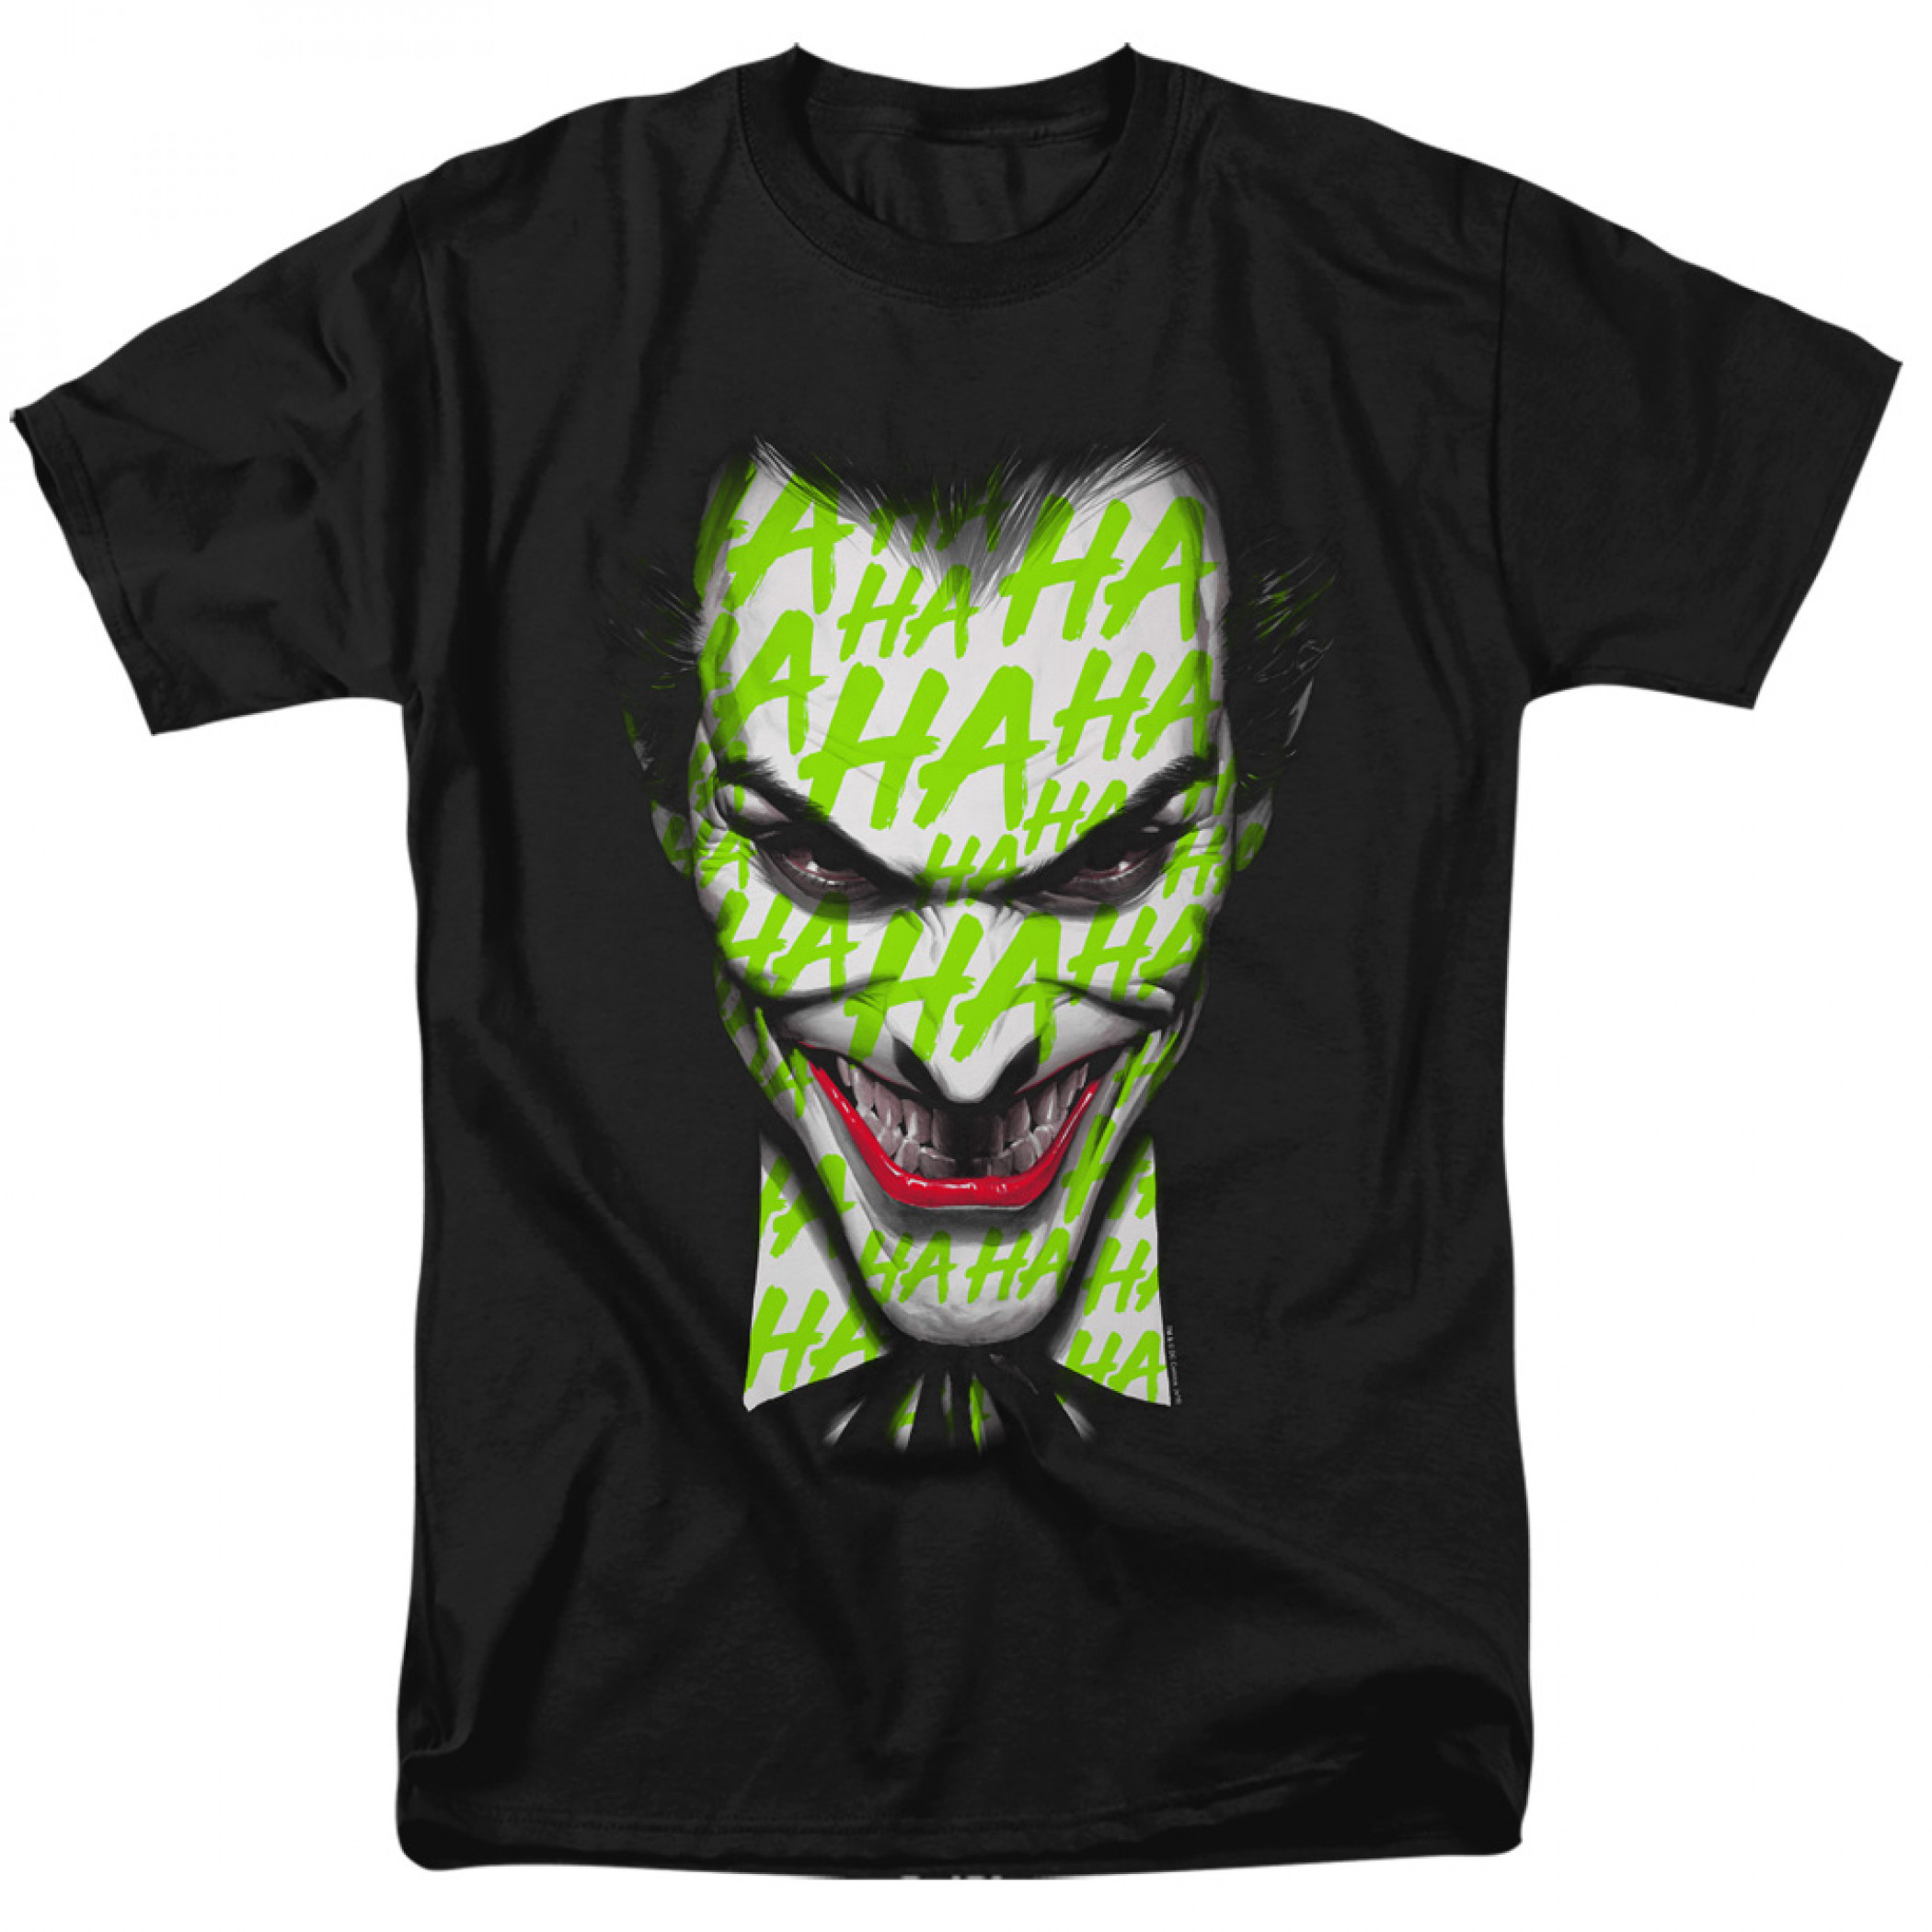 The Joker Laughing Grin T-Shirt